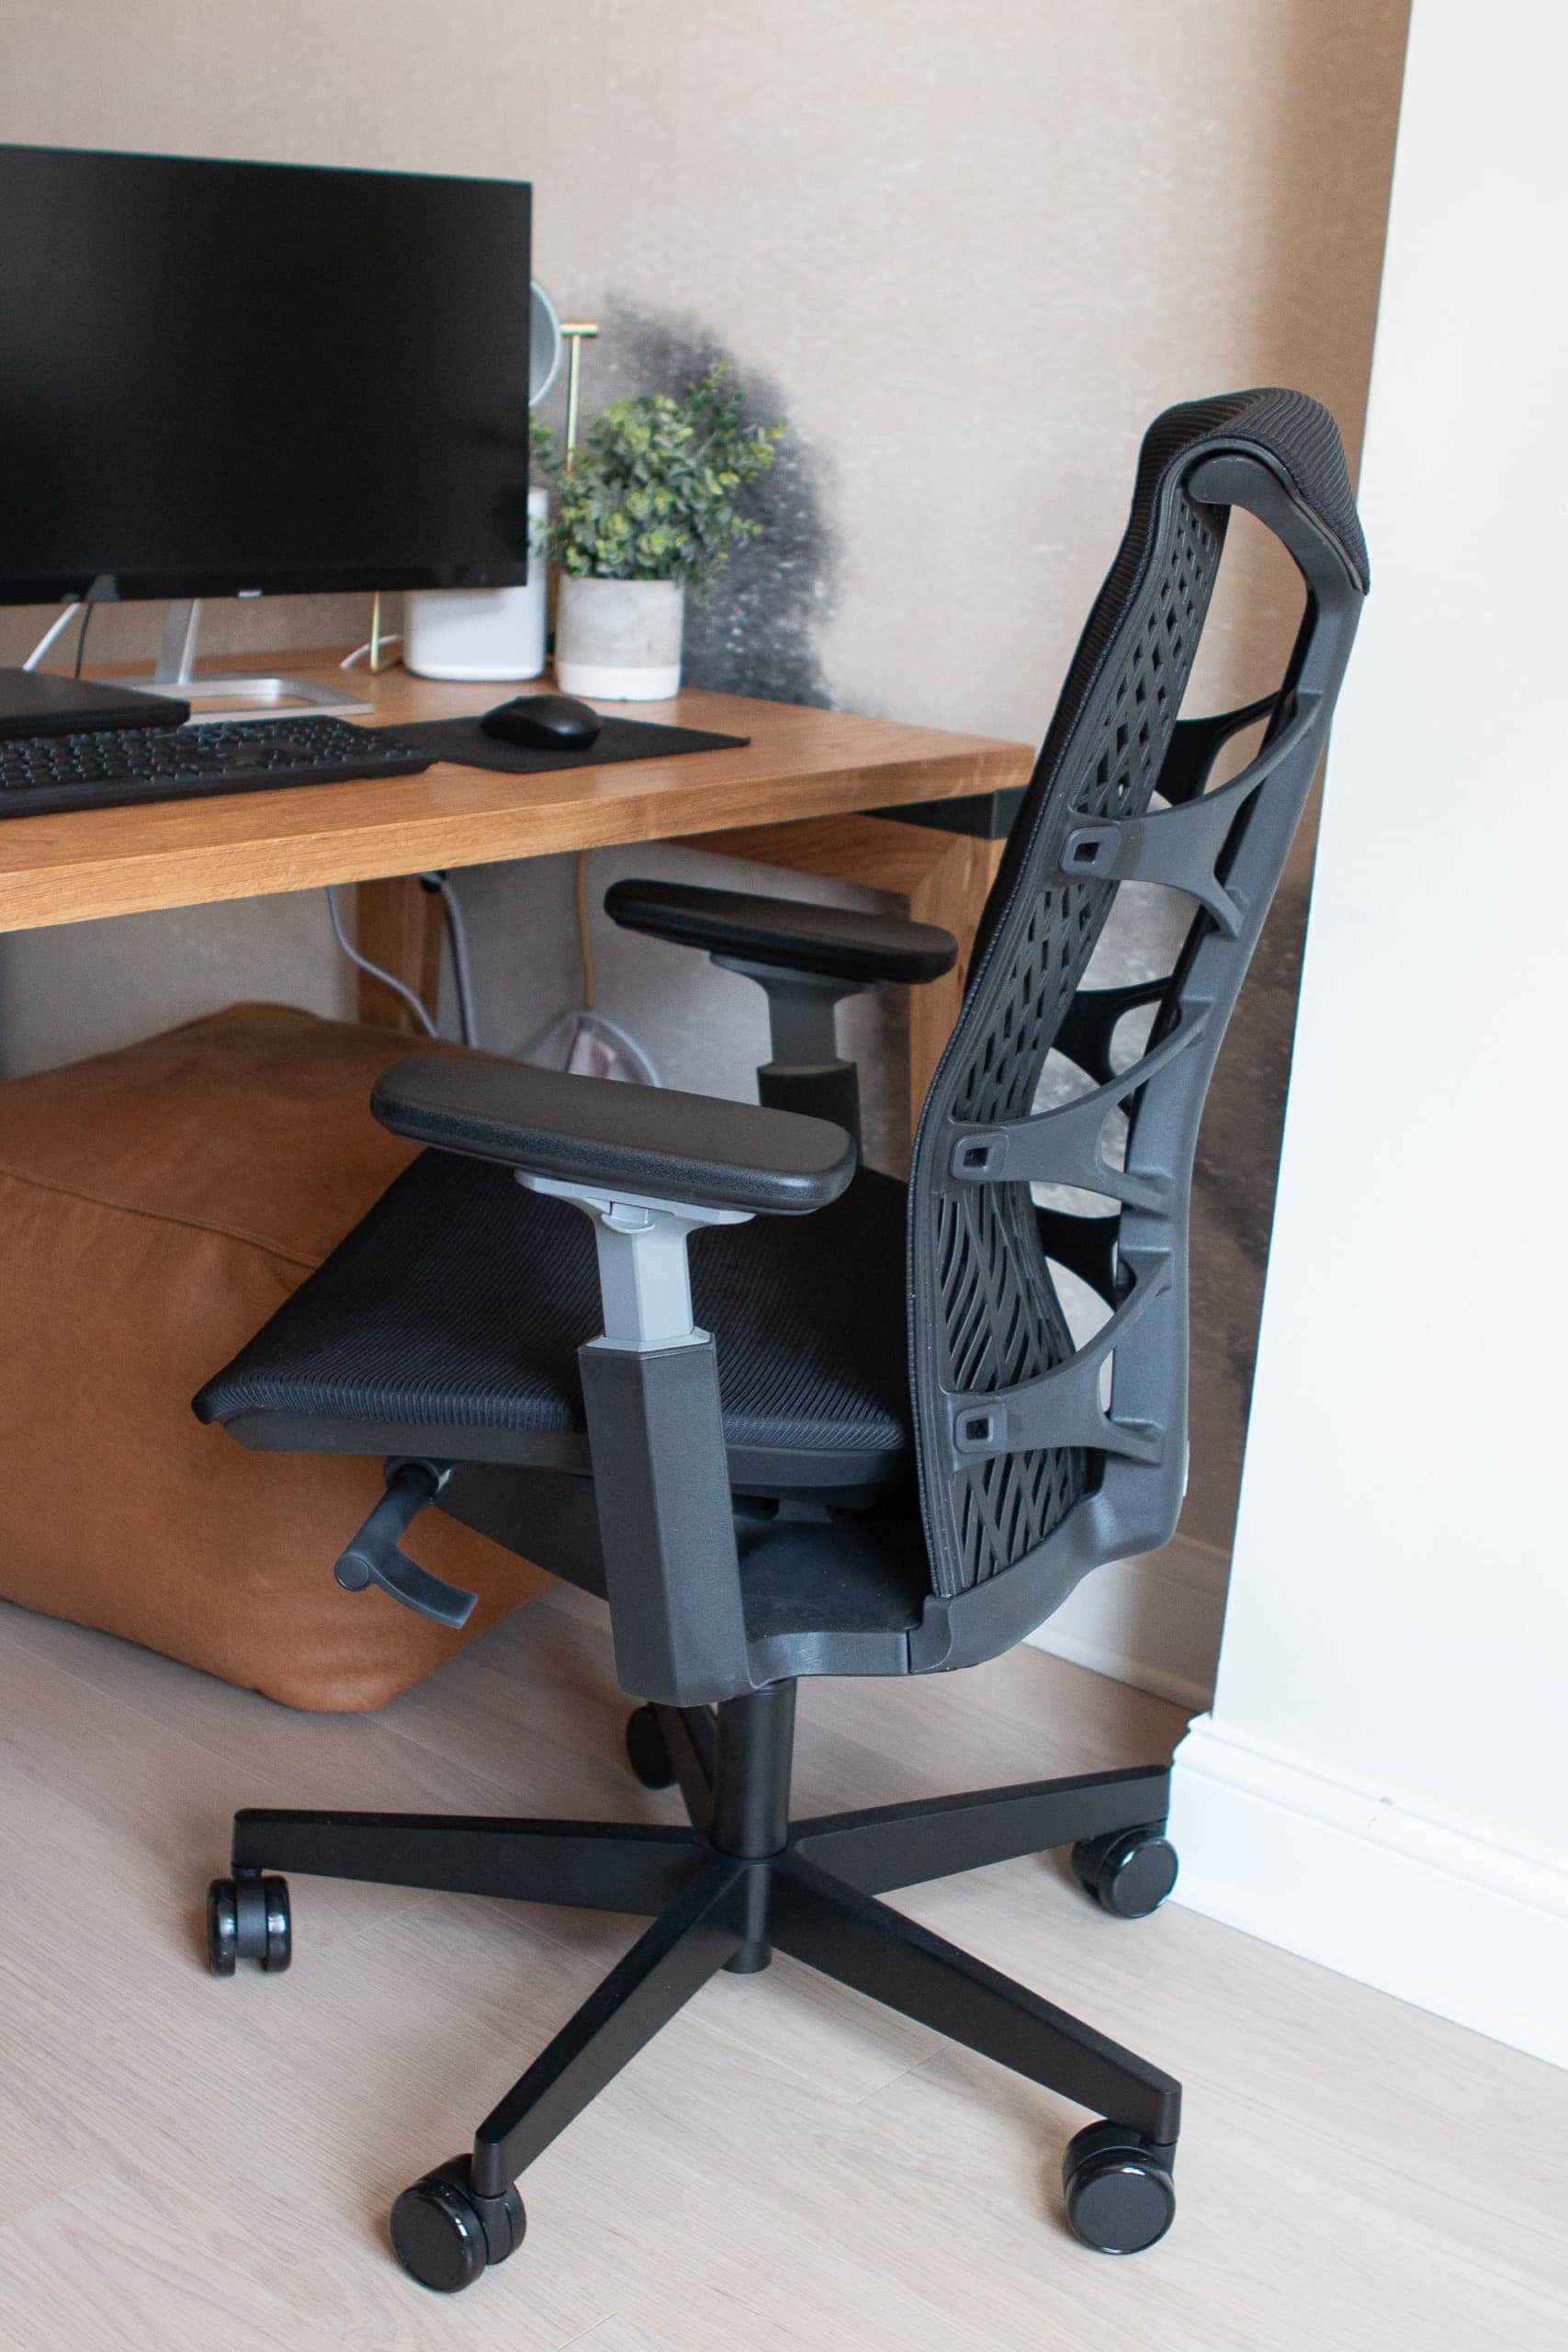 ergonomic office desk chair